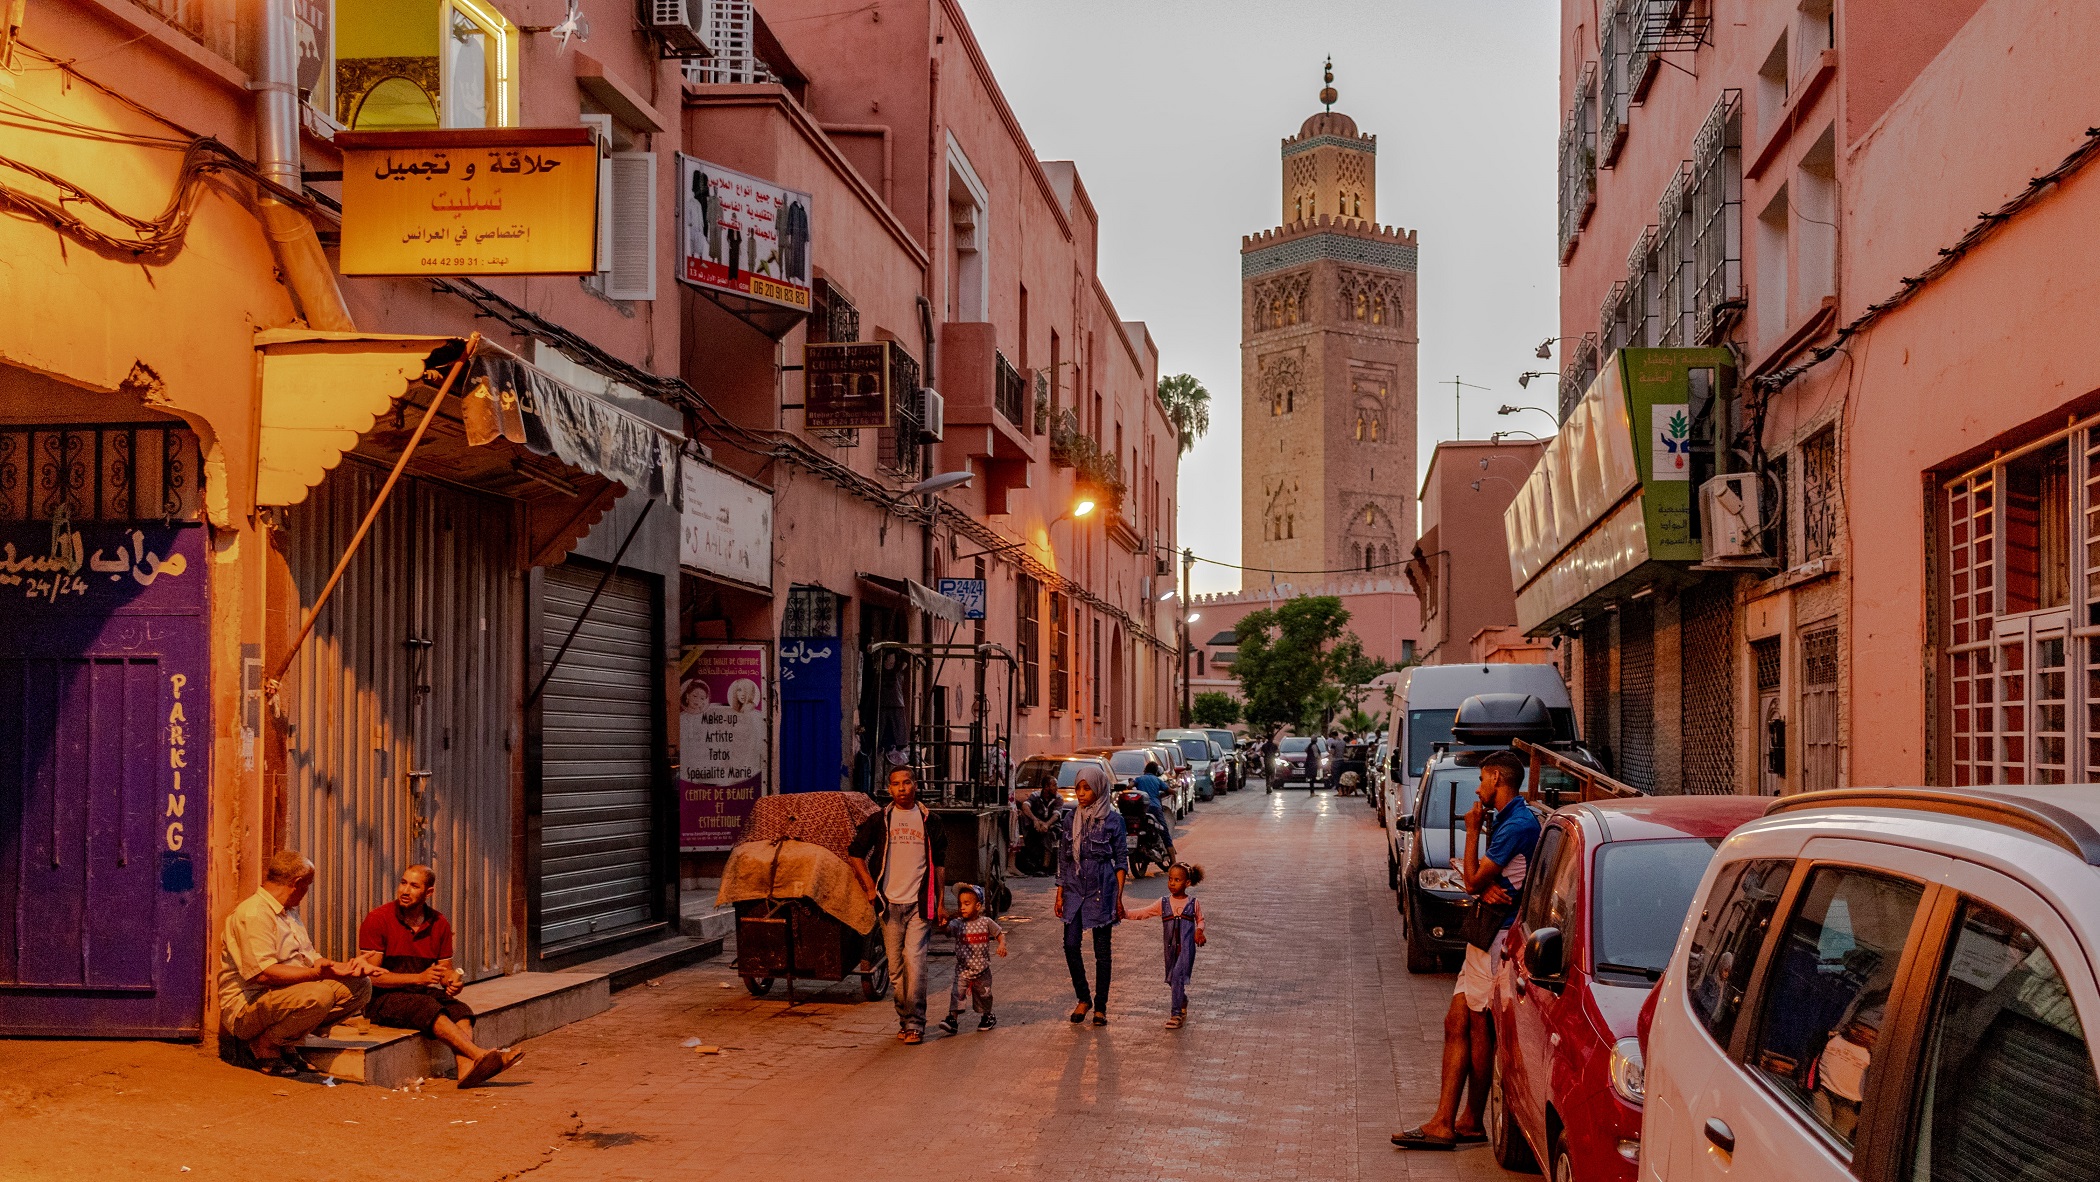 Day 09: Marrakech